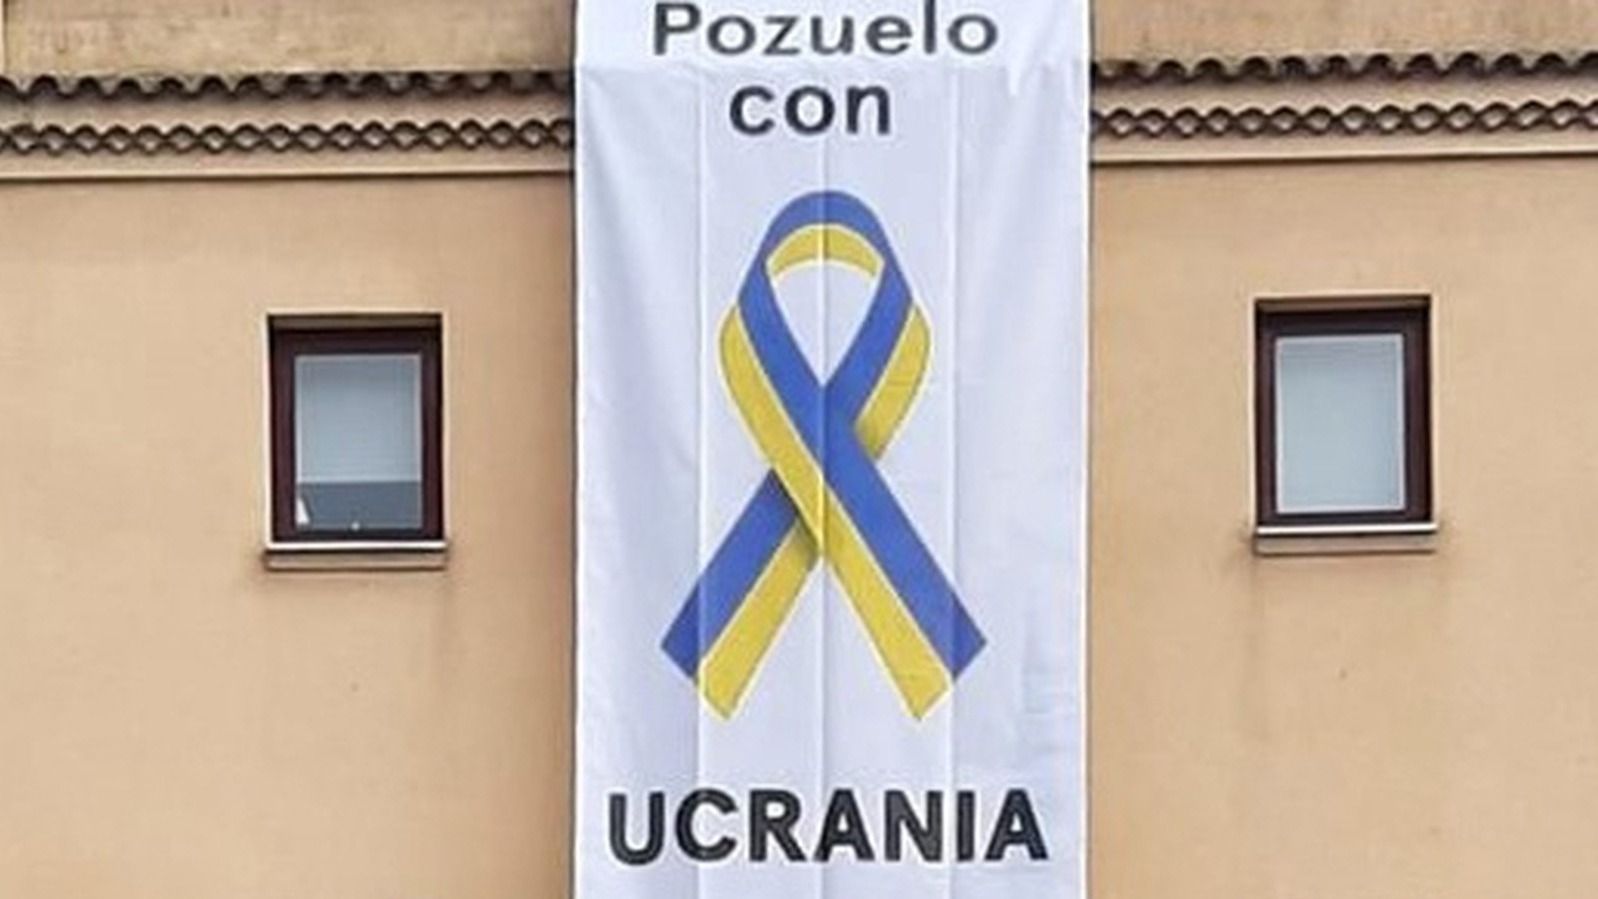 Pozuelo se ilumina de azul y amarillo para expresar su apoyo al pueblo ucraniano